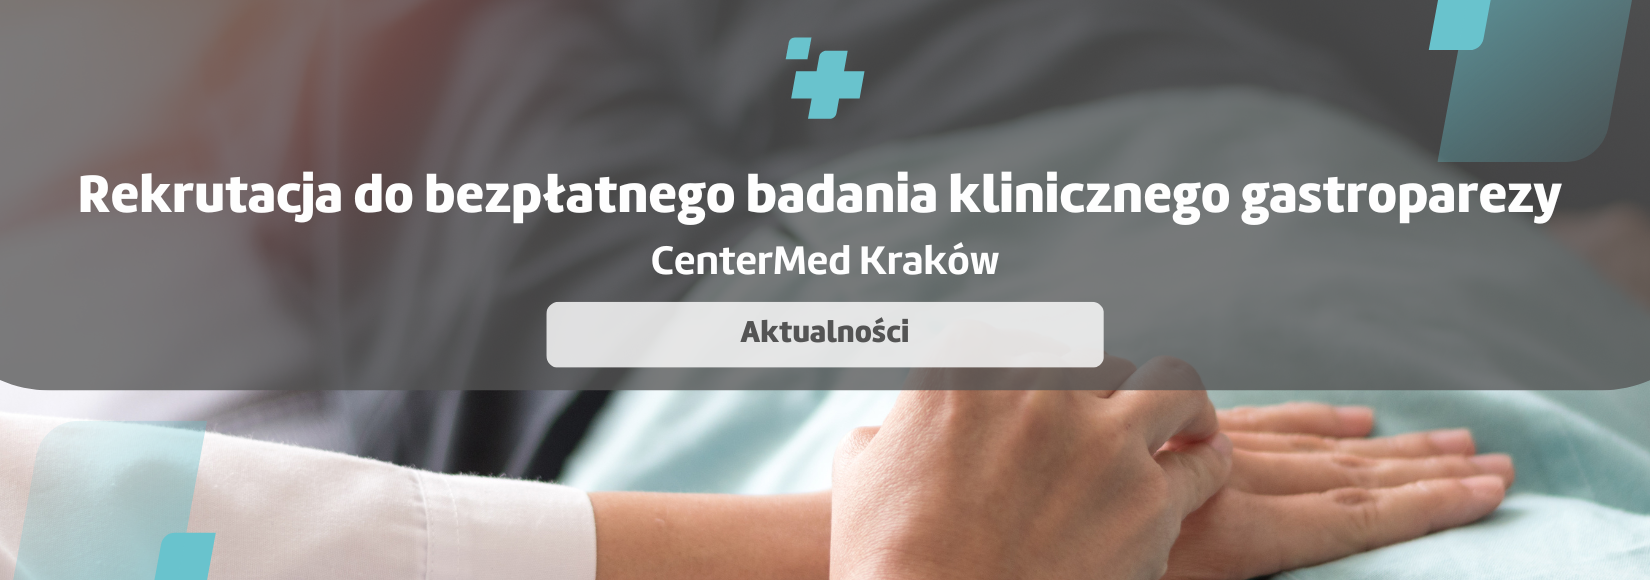 Rekrutacja do bezpłatnego badania klinicznego gastroparezy - CenterMed Kraków  